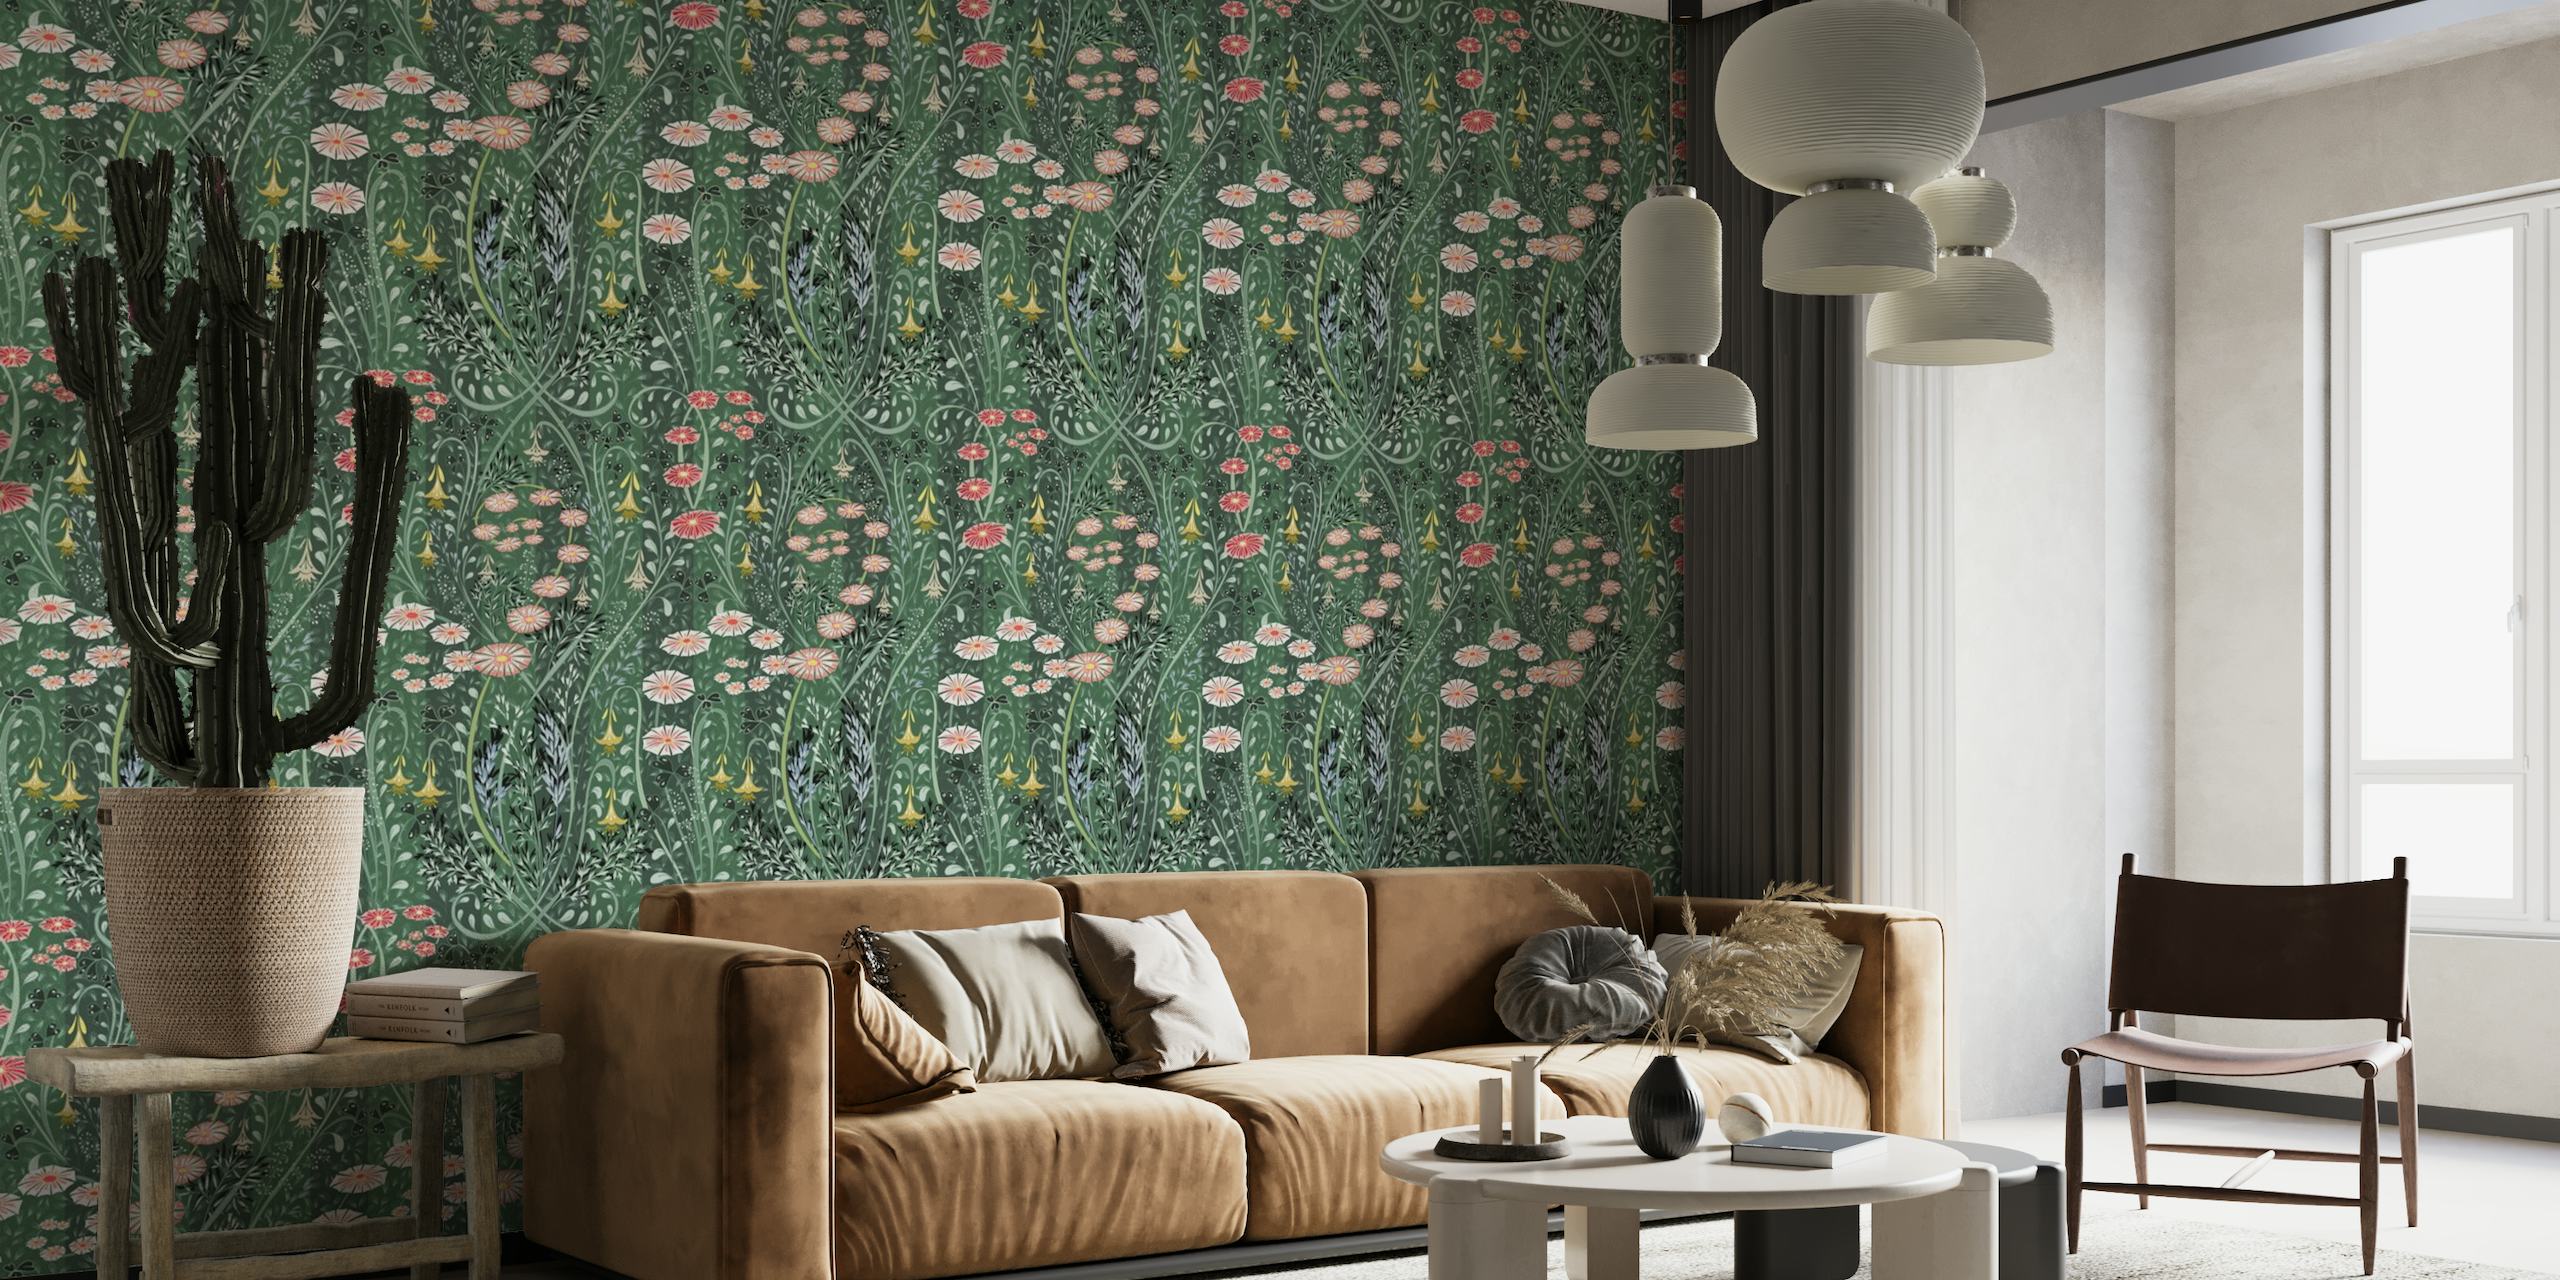 Muurschildering met bloemenmotief, een weelderige groene achtergrond en kleurrijke weidebloemen